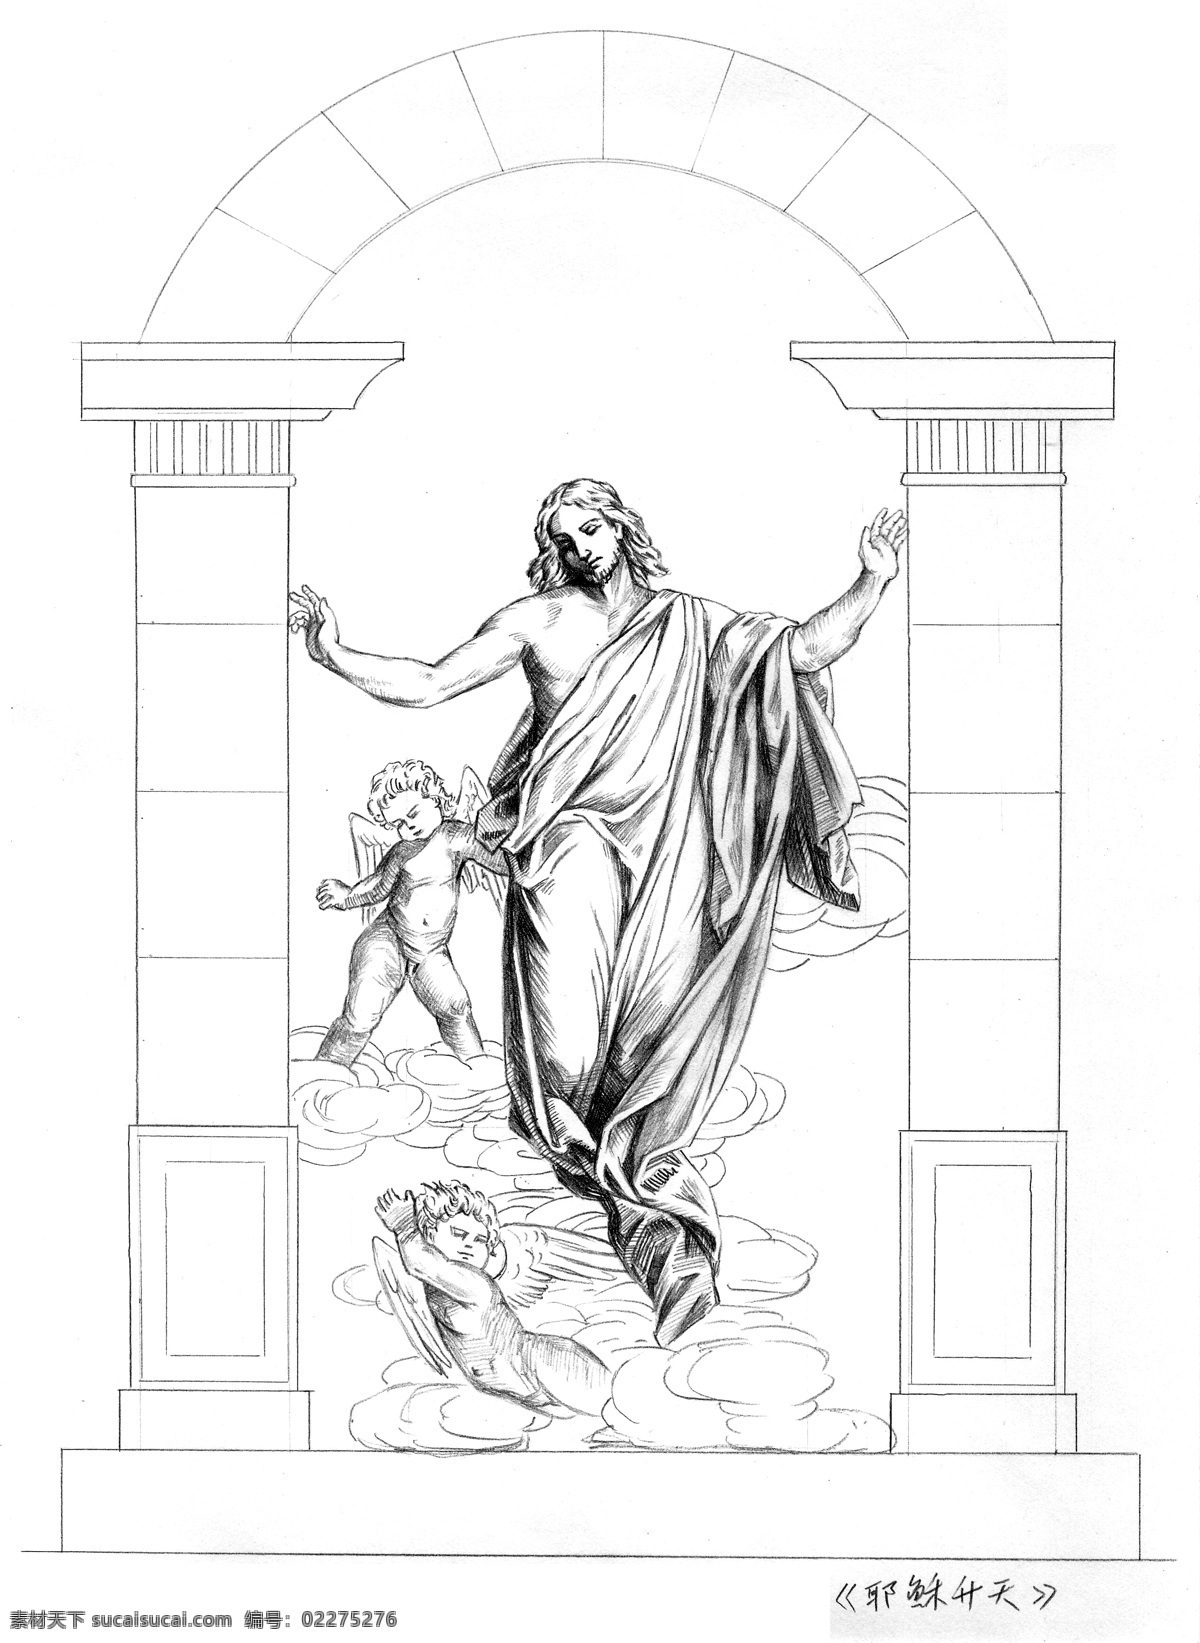 耶稣升天 手绘 黑白稿 圣经故事 耶稣 天使 线条稿 雕塑设计 图纸 手绘图纸 绘画书法 文化艺术